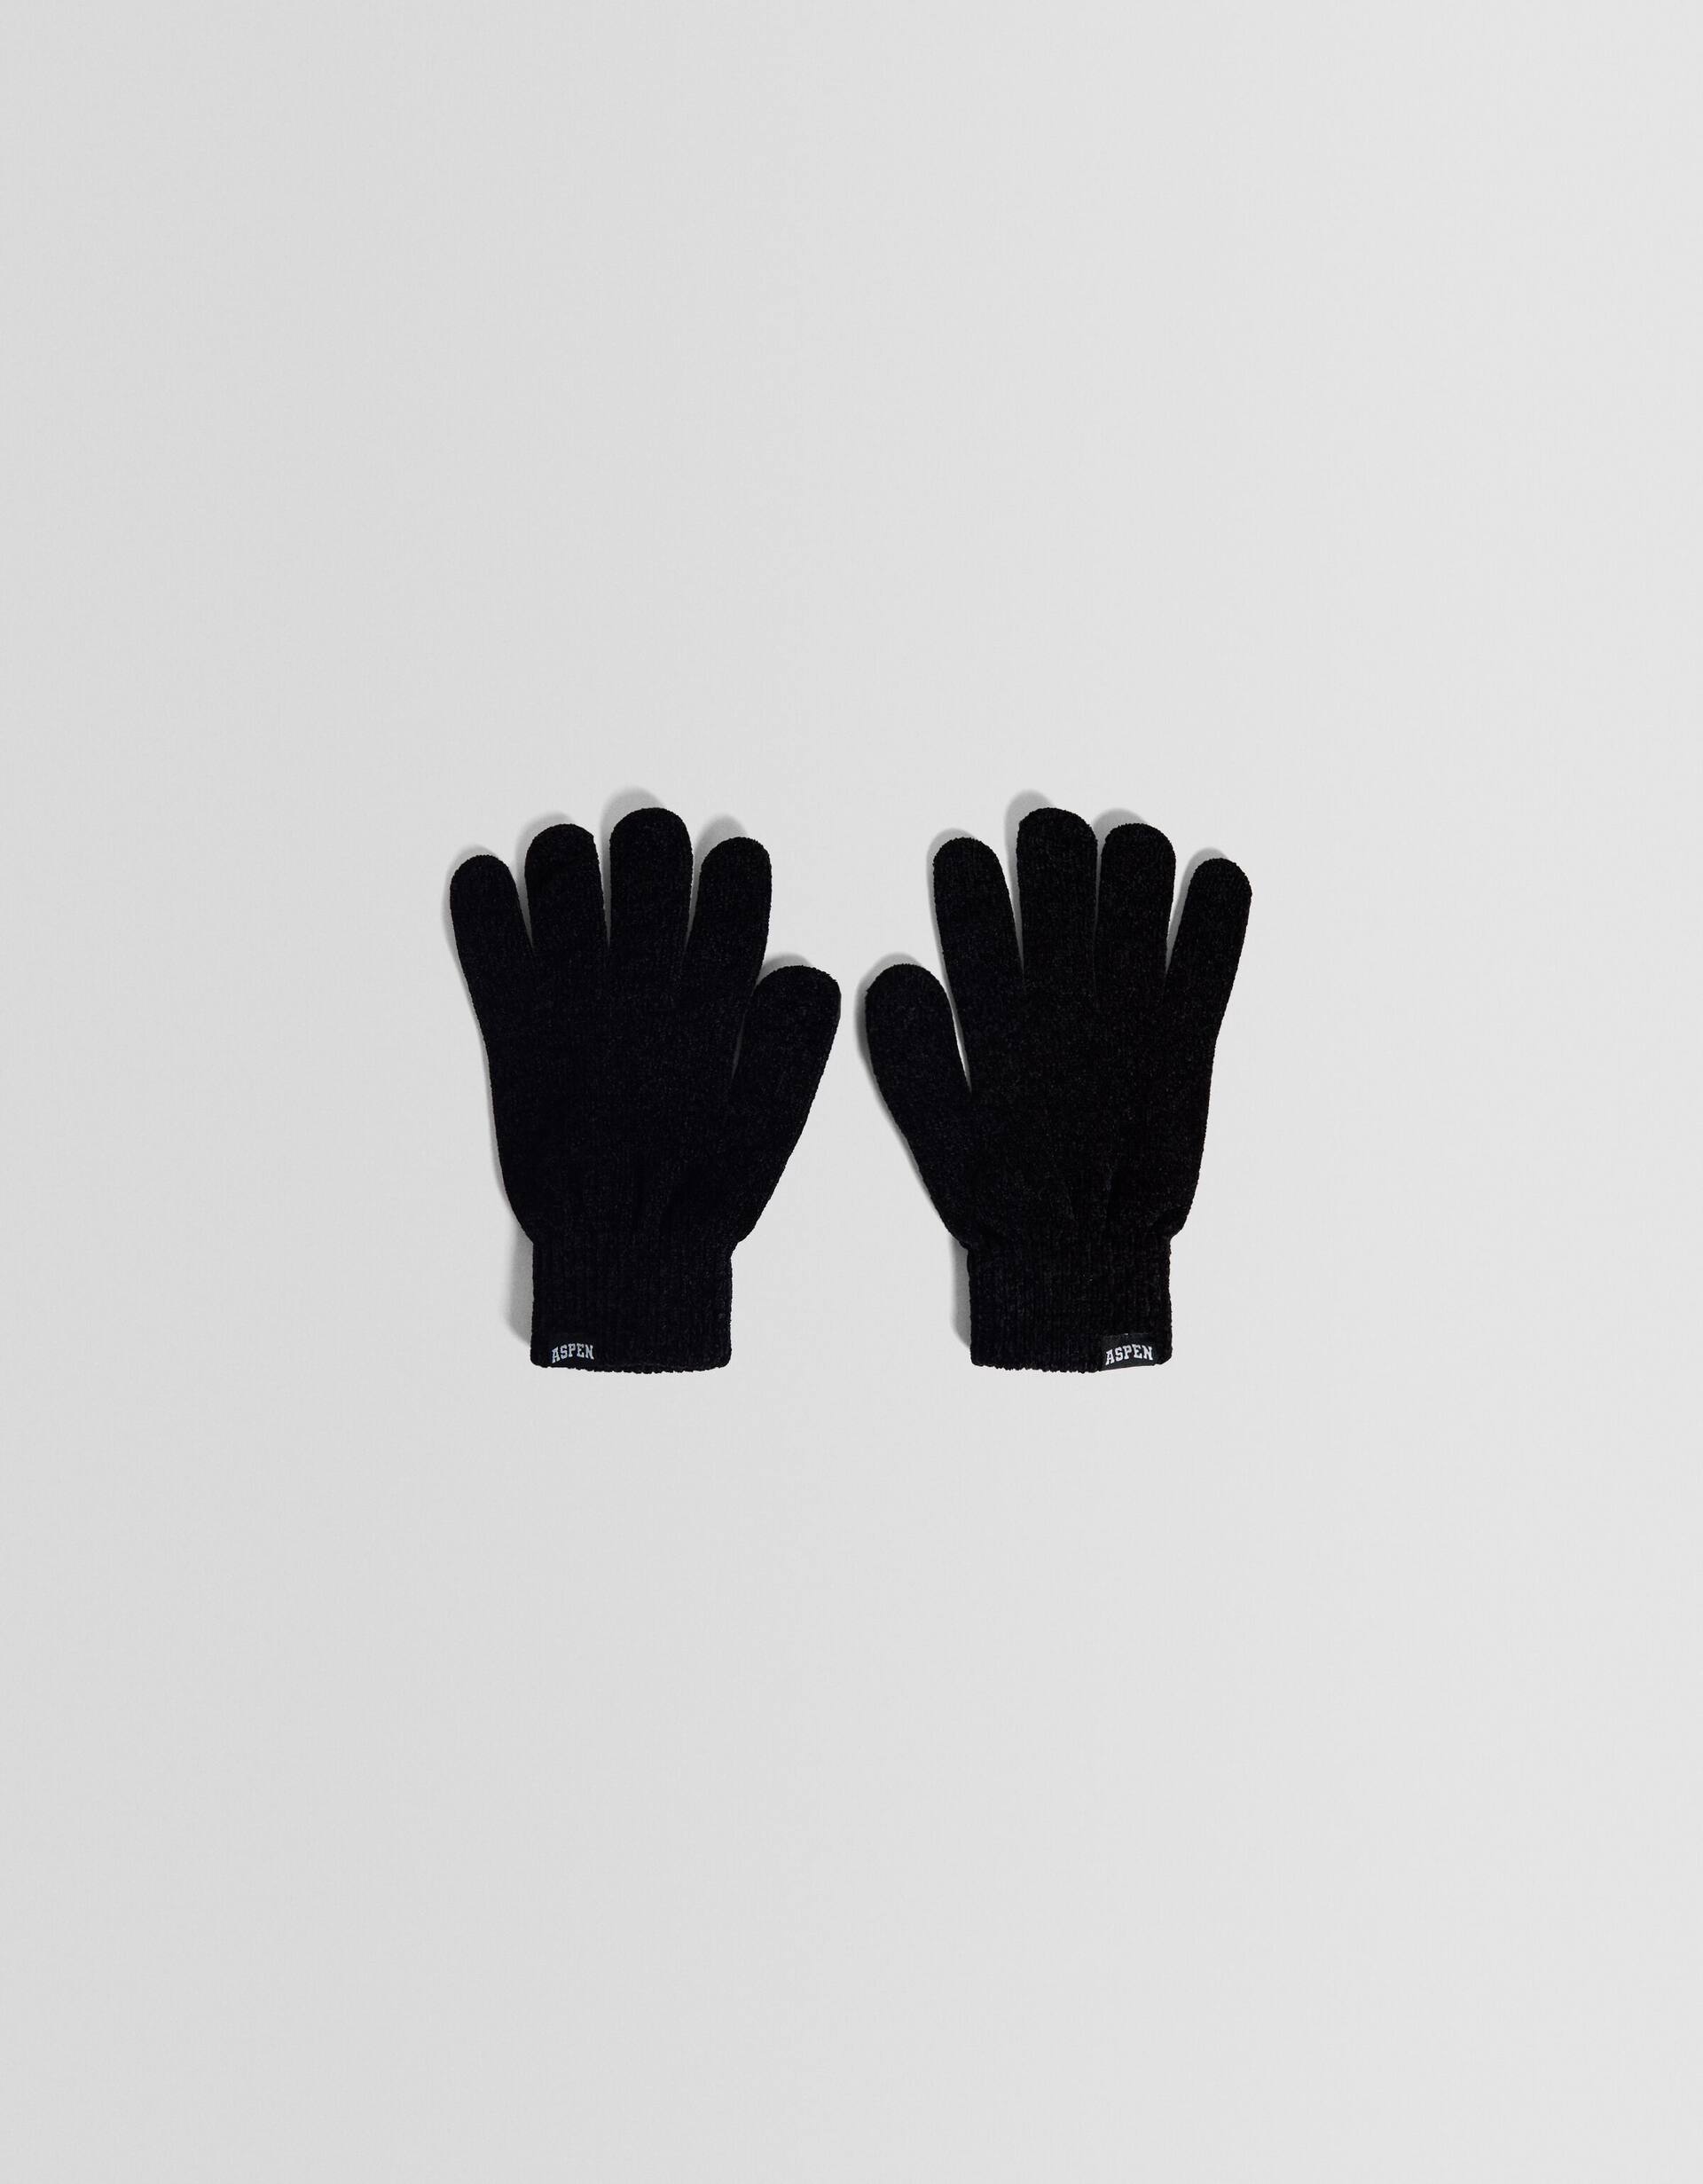 T Monogram Chenille Gloves: Women's Designer Gloves